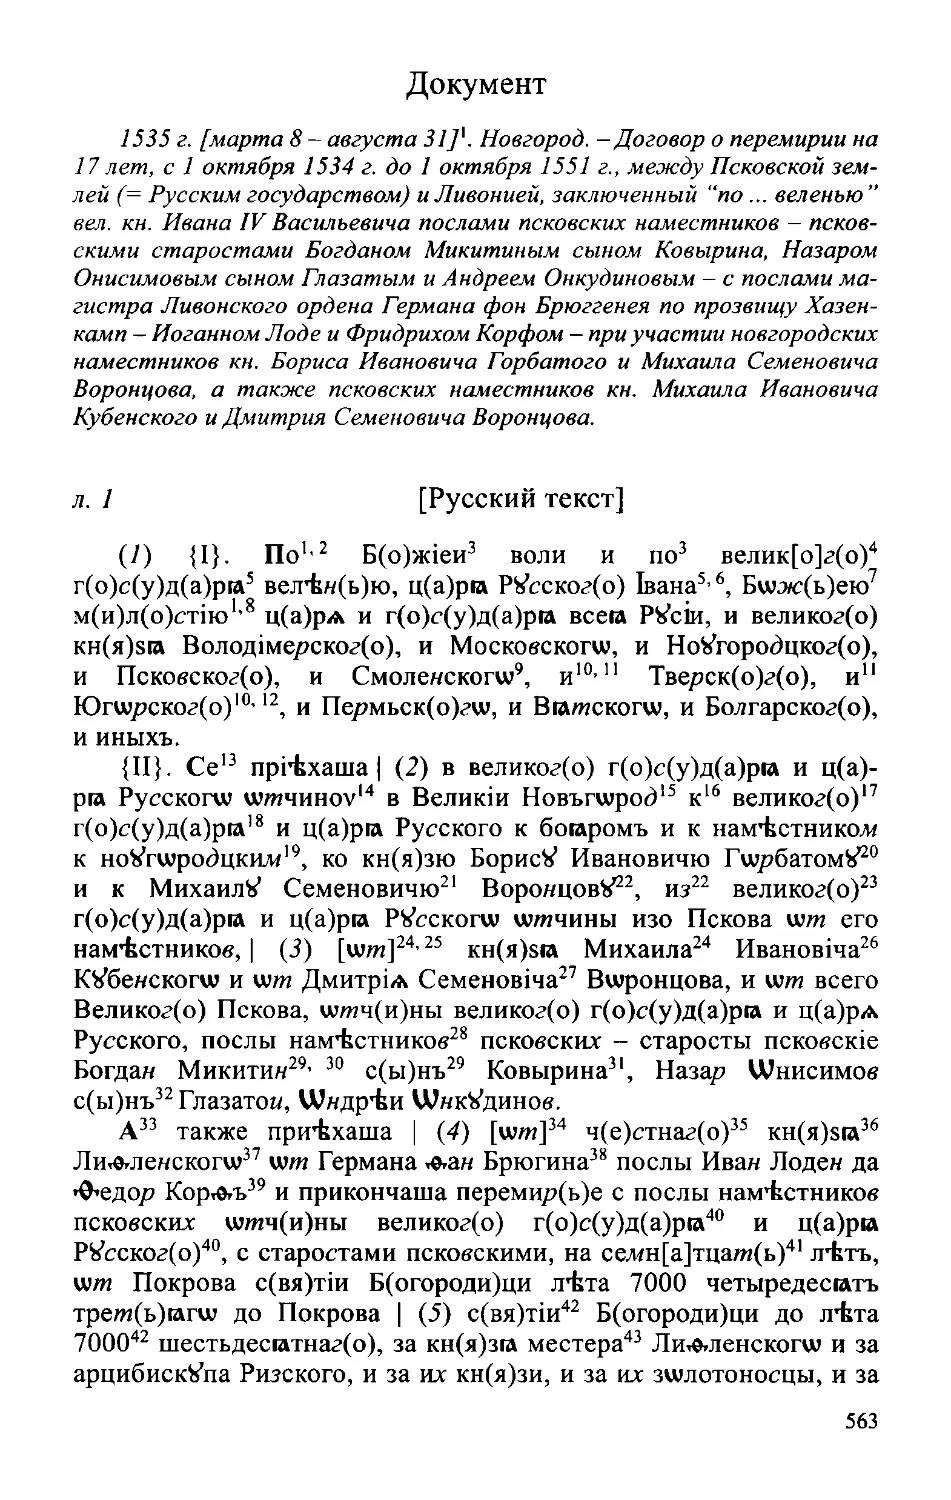 ﻿Докумен
﻿Русский текст договора 1535